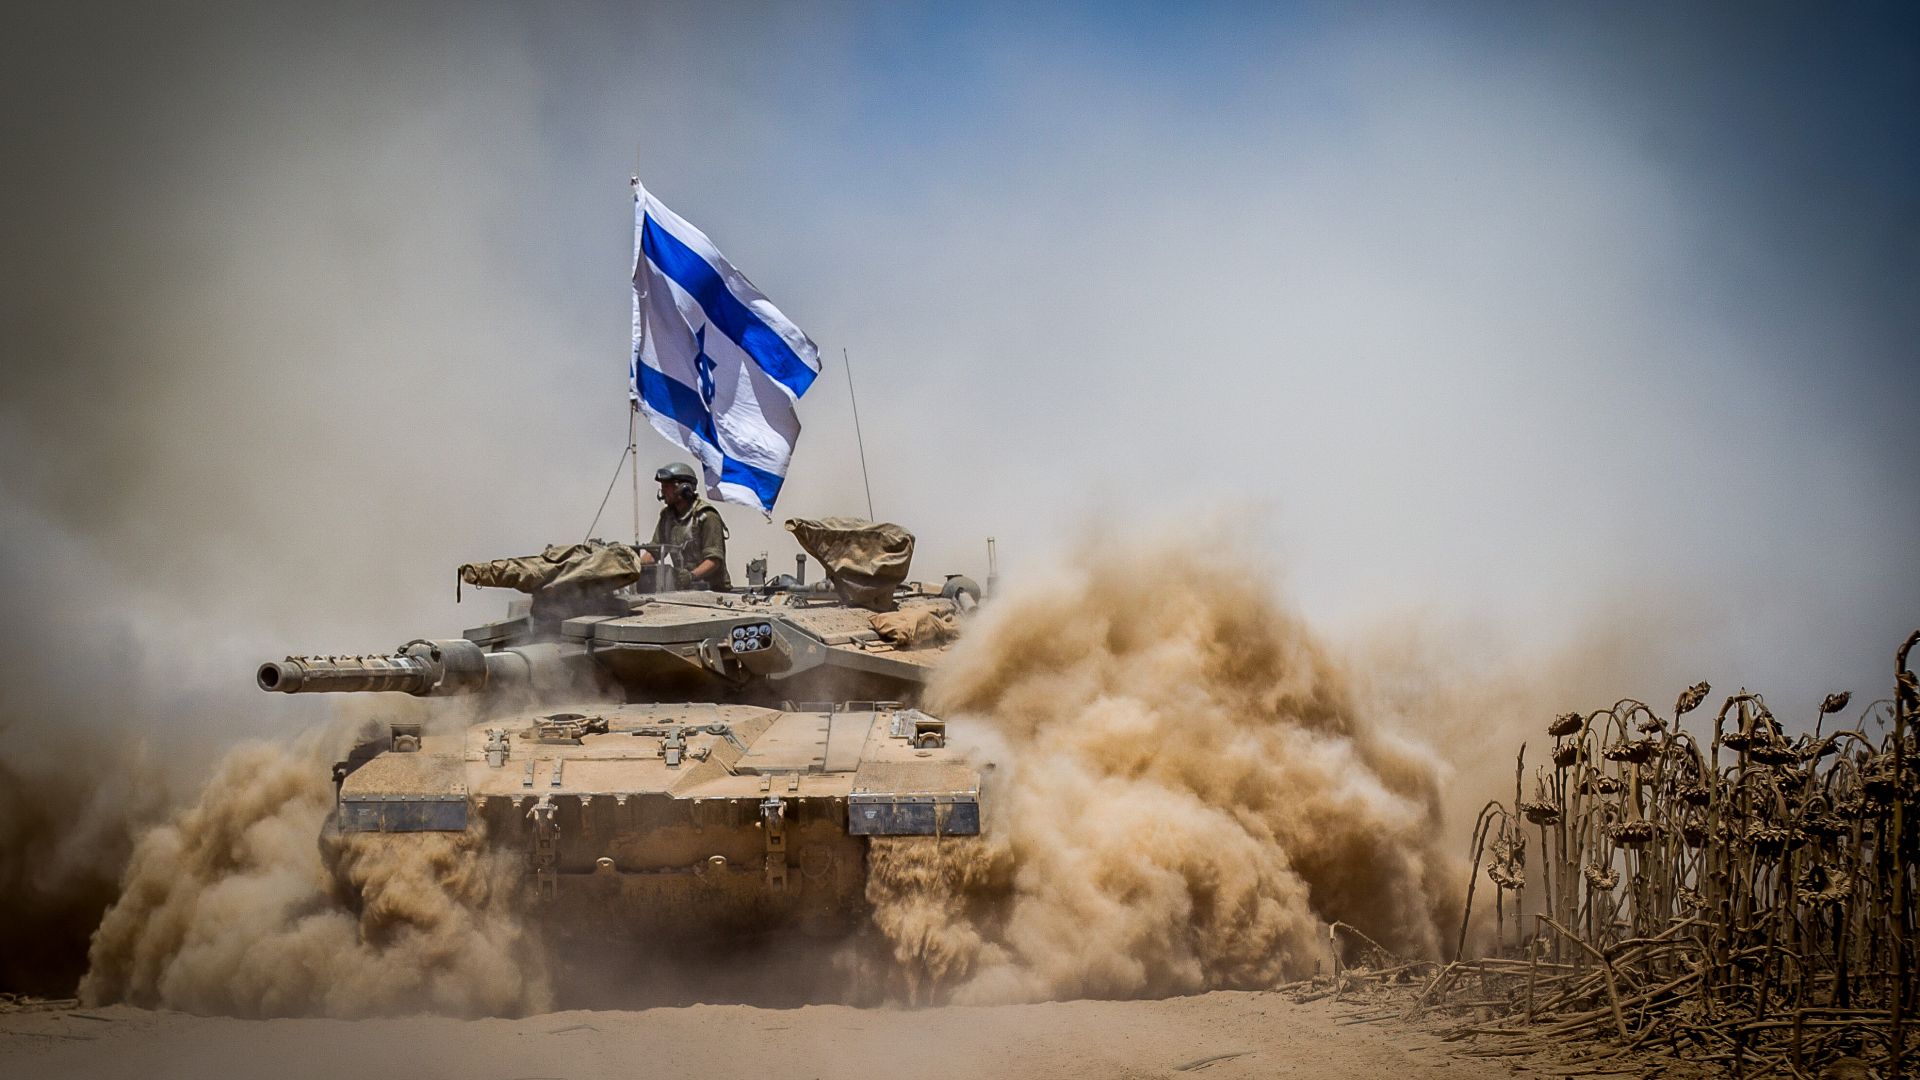 Меркава Марк 4, танк, флаг, армия Израиля, Merkava Mark IV, tank, flag, Israel Army, Israel Defense Forces, desert (horizontal)